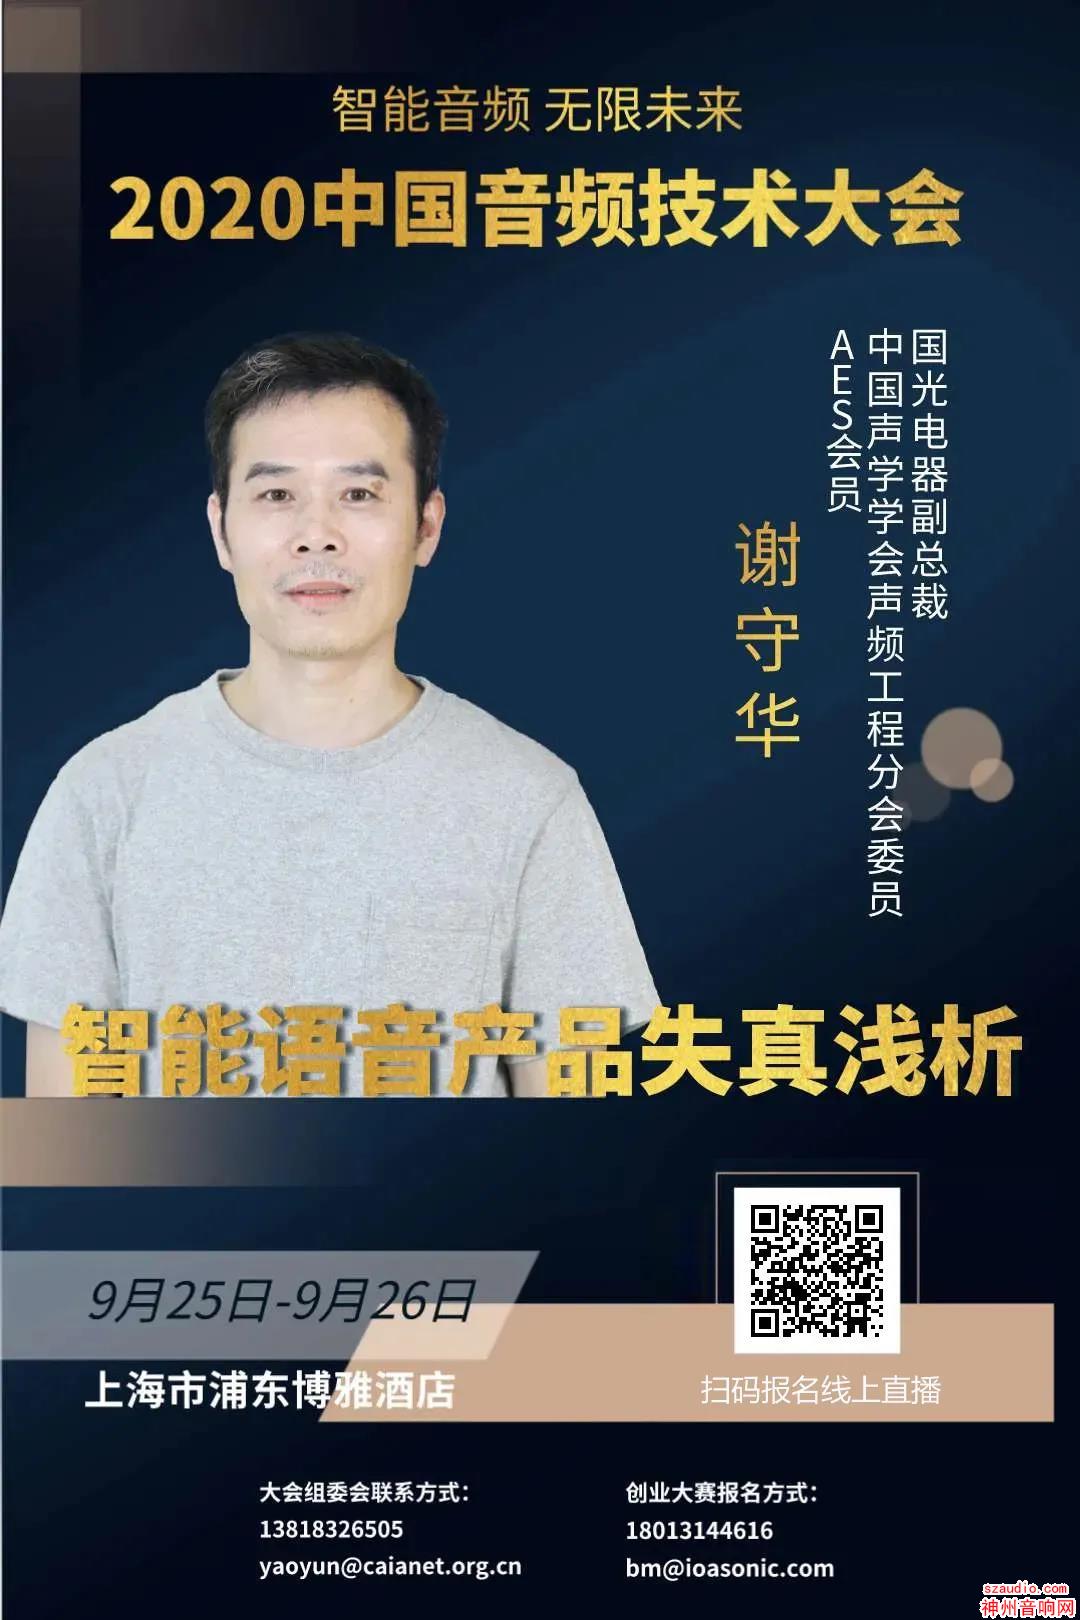 9月25日-26日直播预告：中国音频技术大会